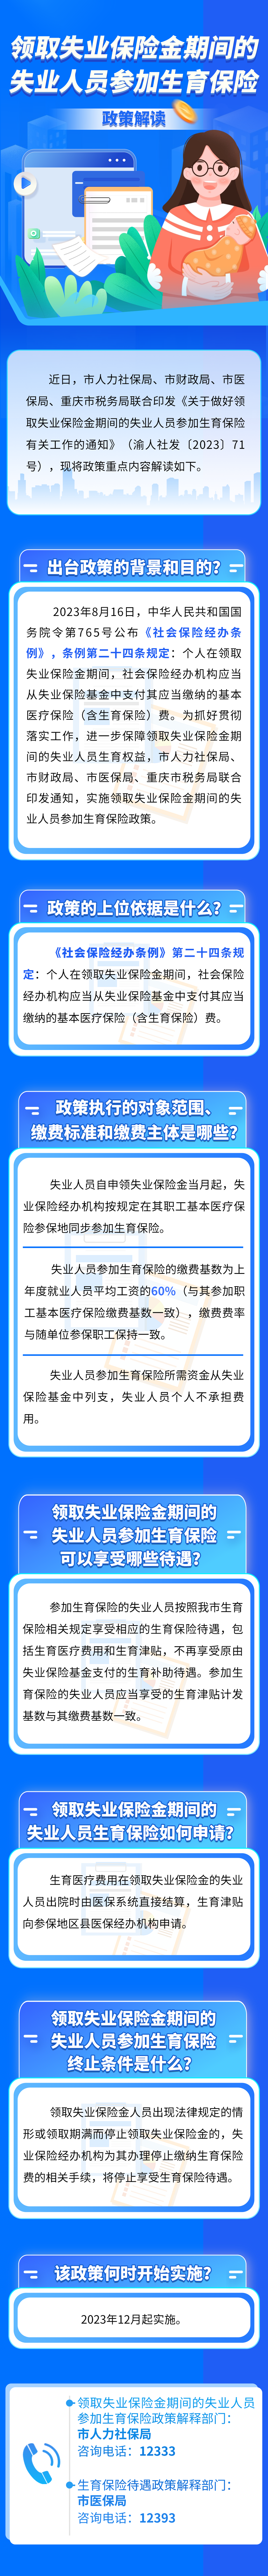 重庆市领取失业保险金的失业人员将参加生育保险